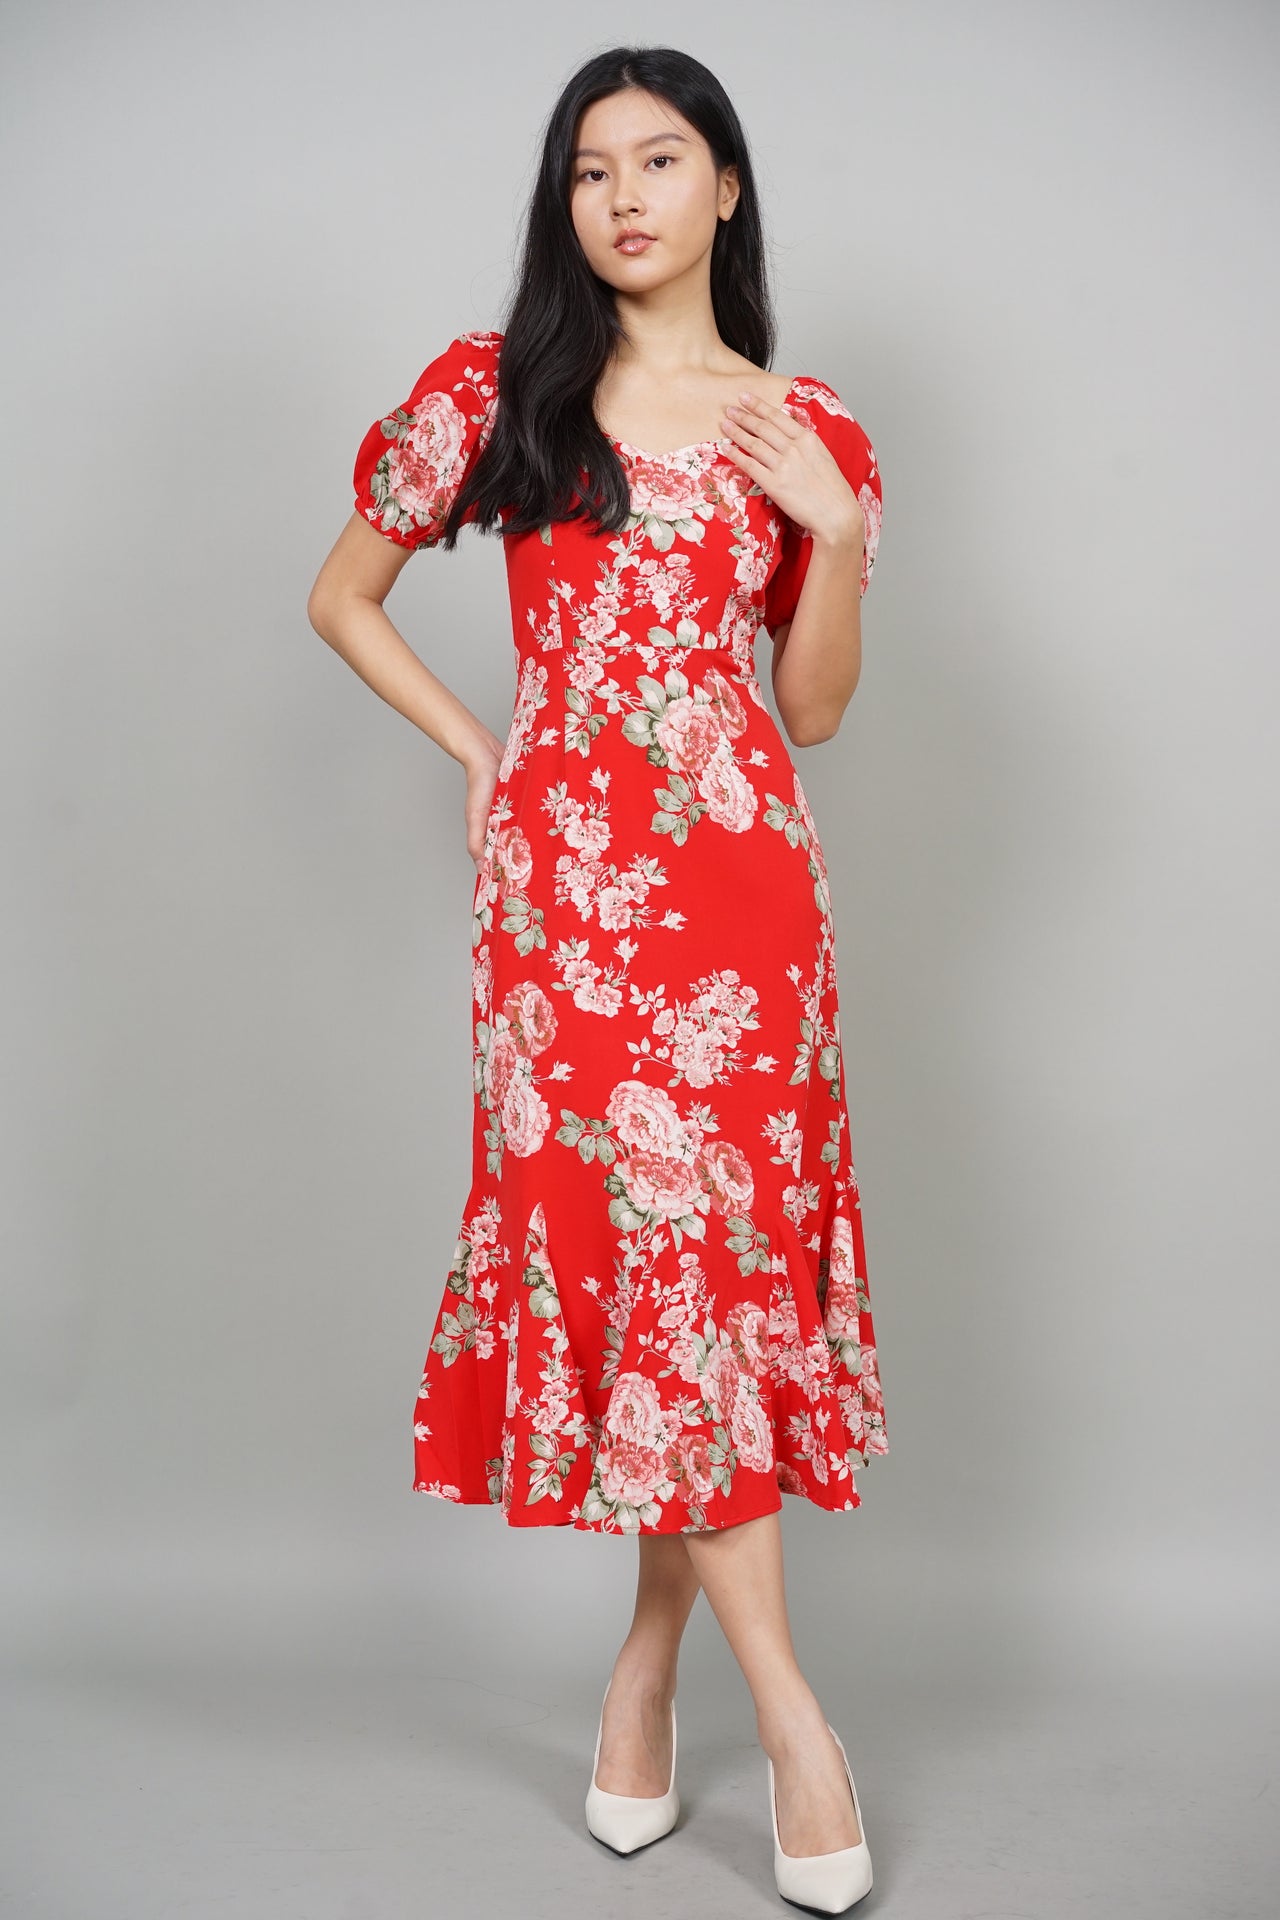 Ellendra Midi Dress in Red Floral